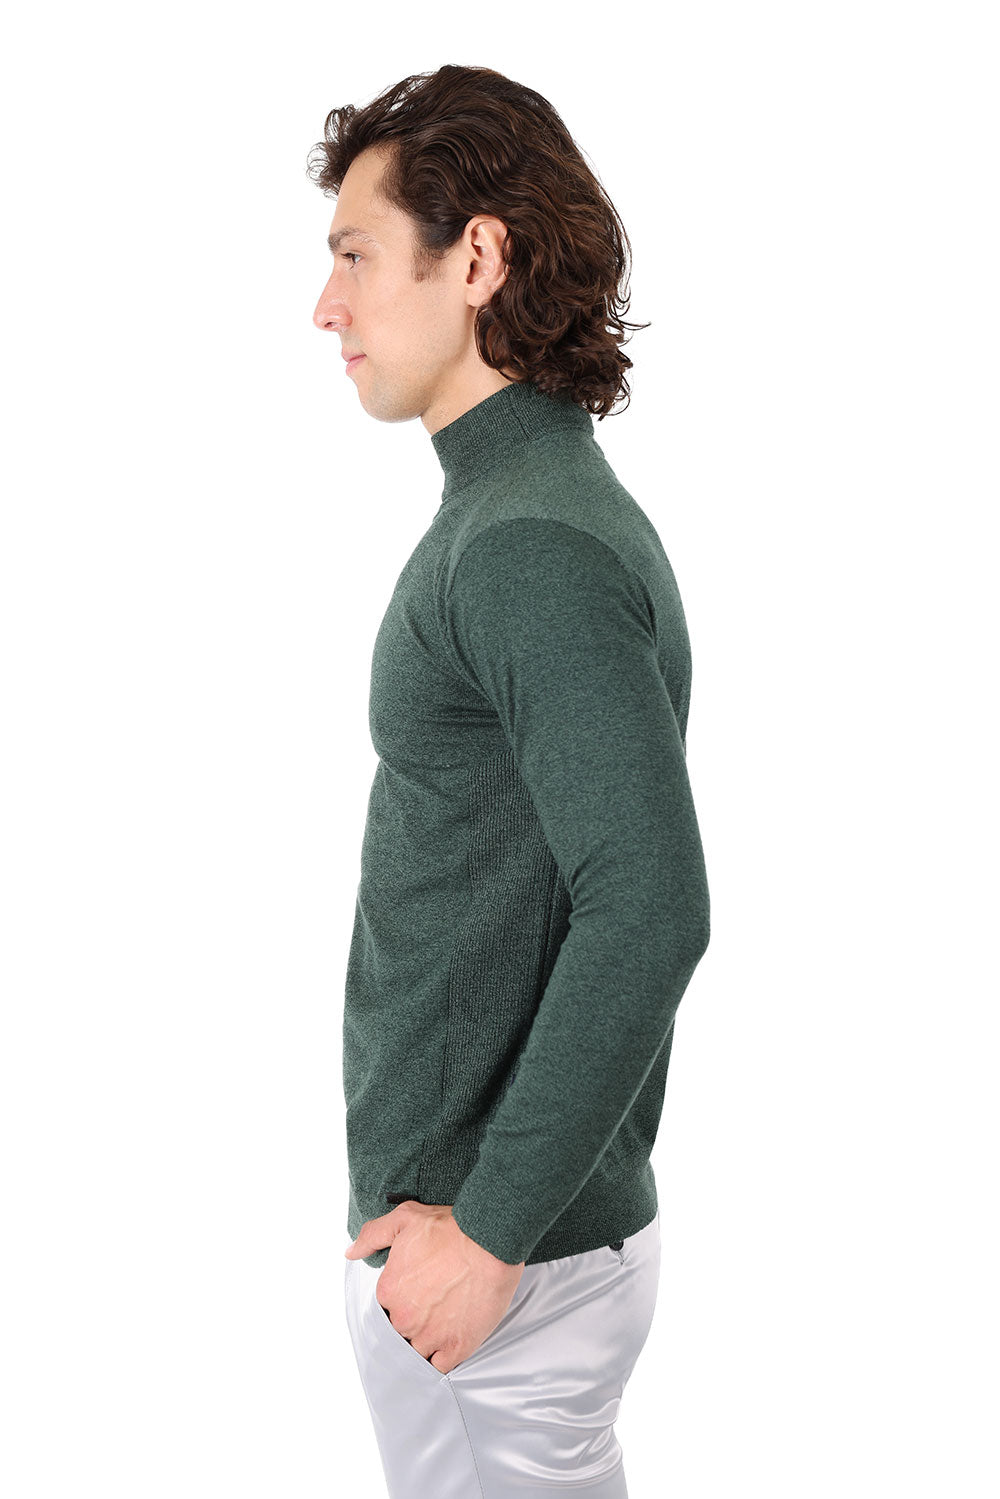 Men's Turtleneck Ribbed Solid Color Mock Turtleneck Sweater 2LS2103 Emerald